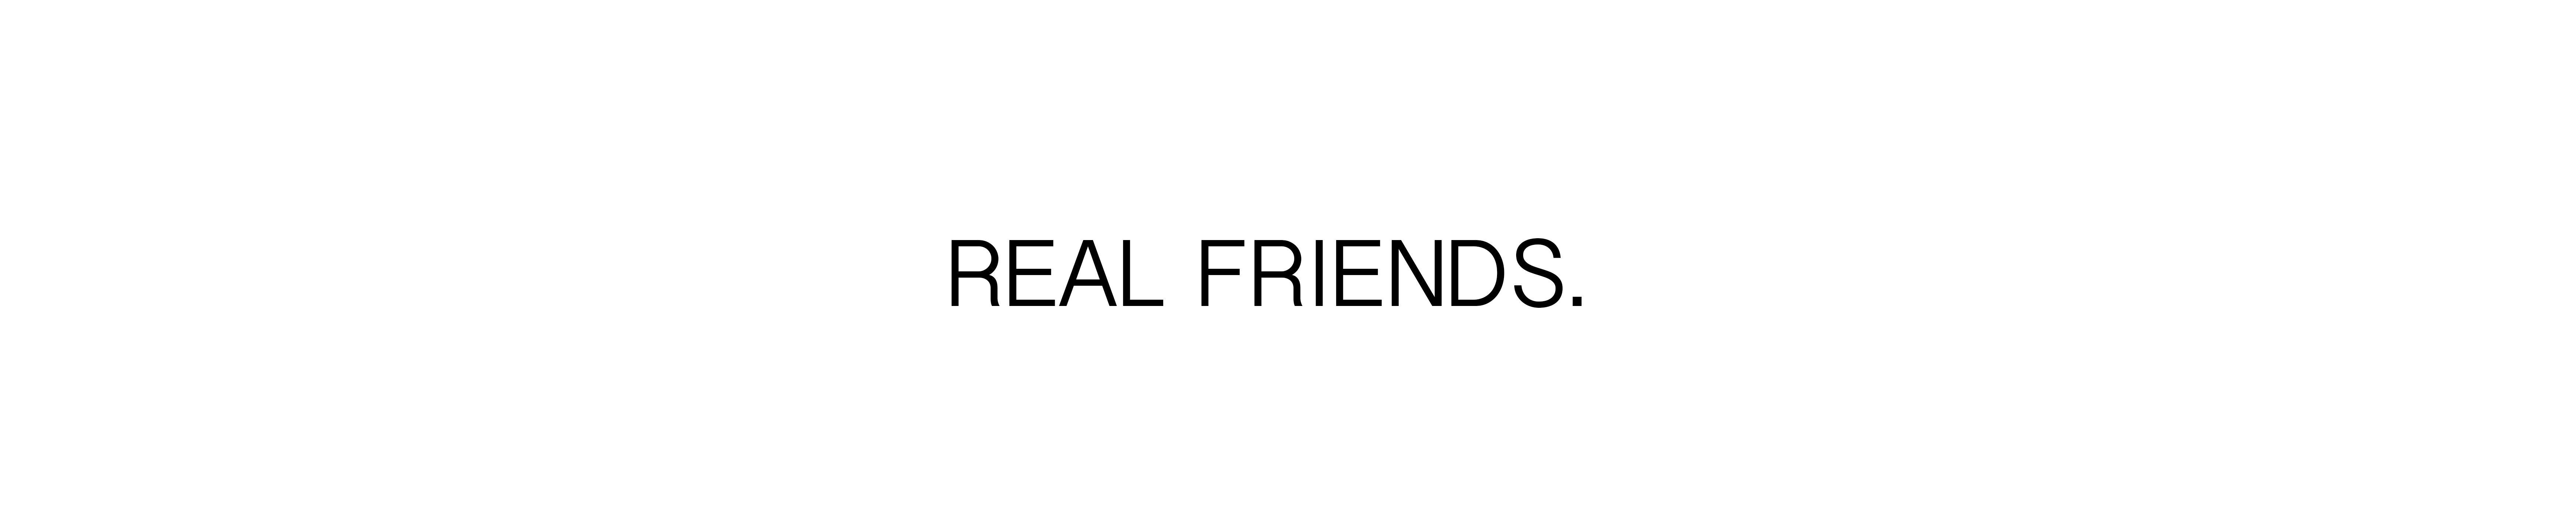 realfriends122